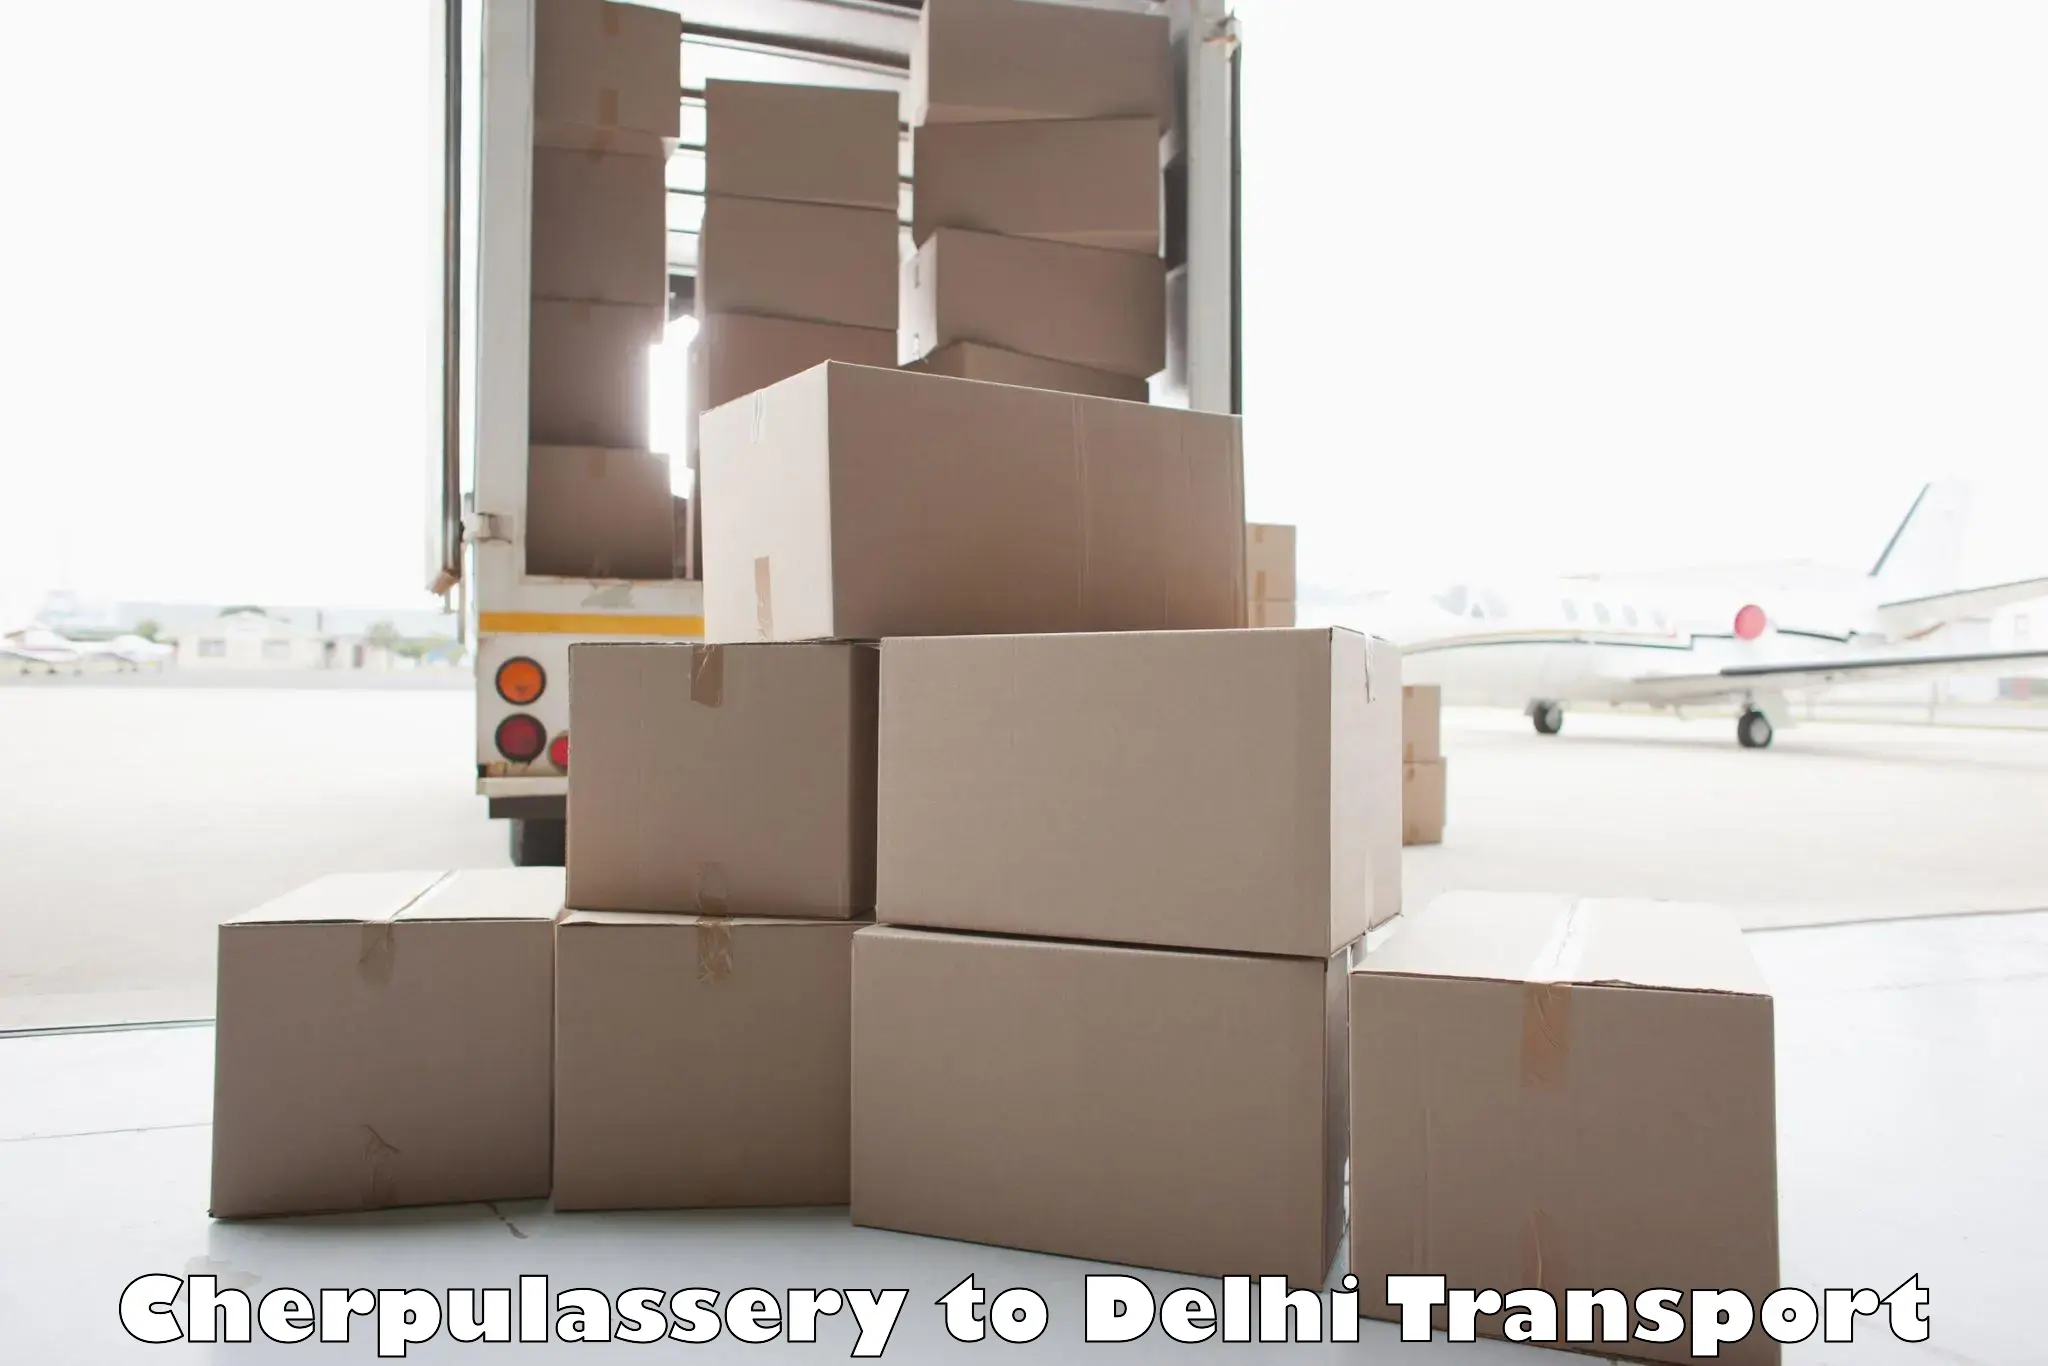 Delivery service Cherpulassery to Kalkaji